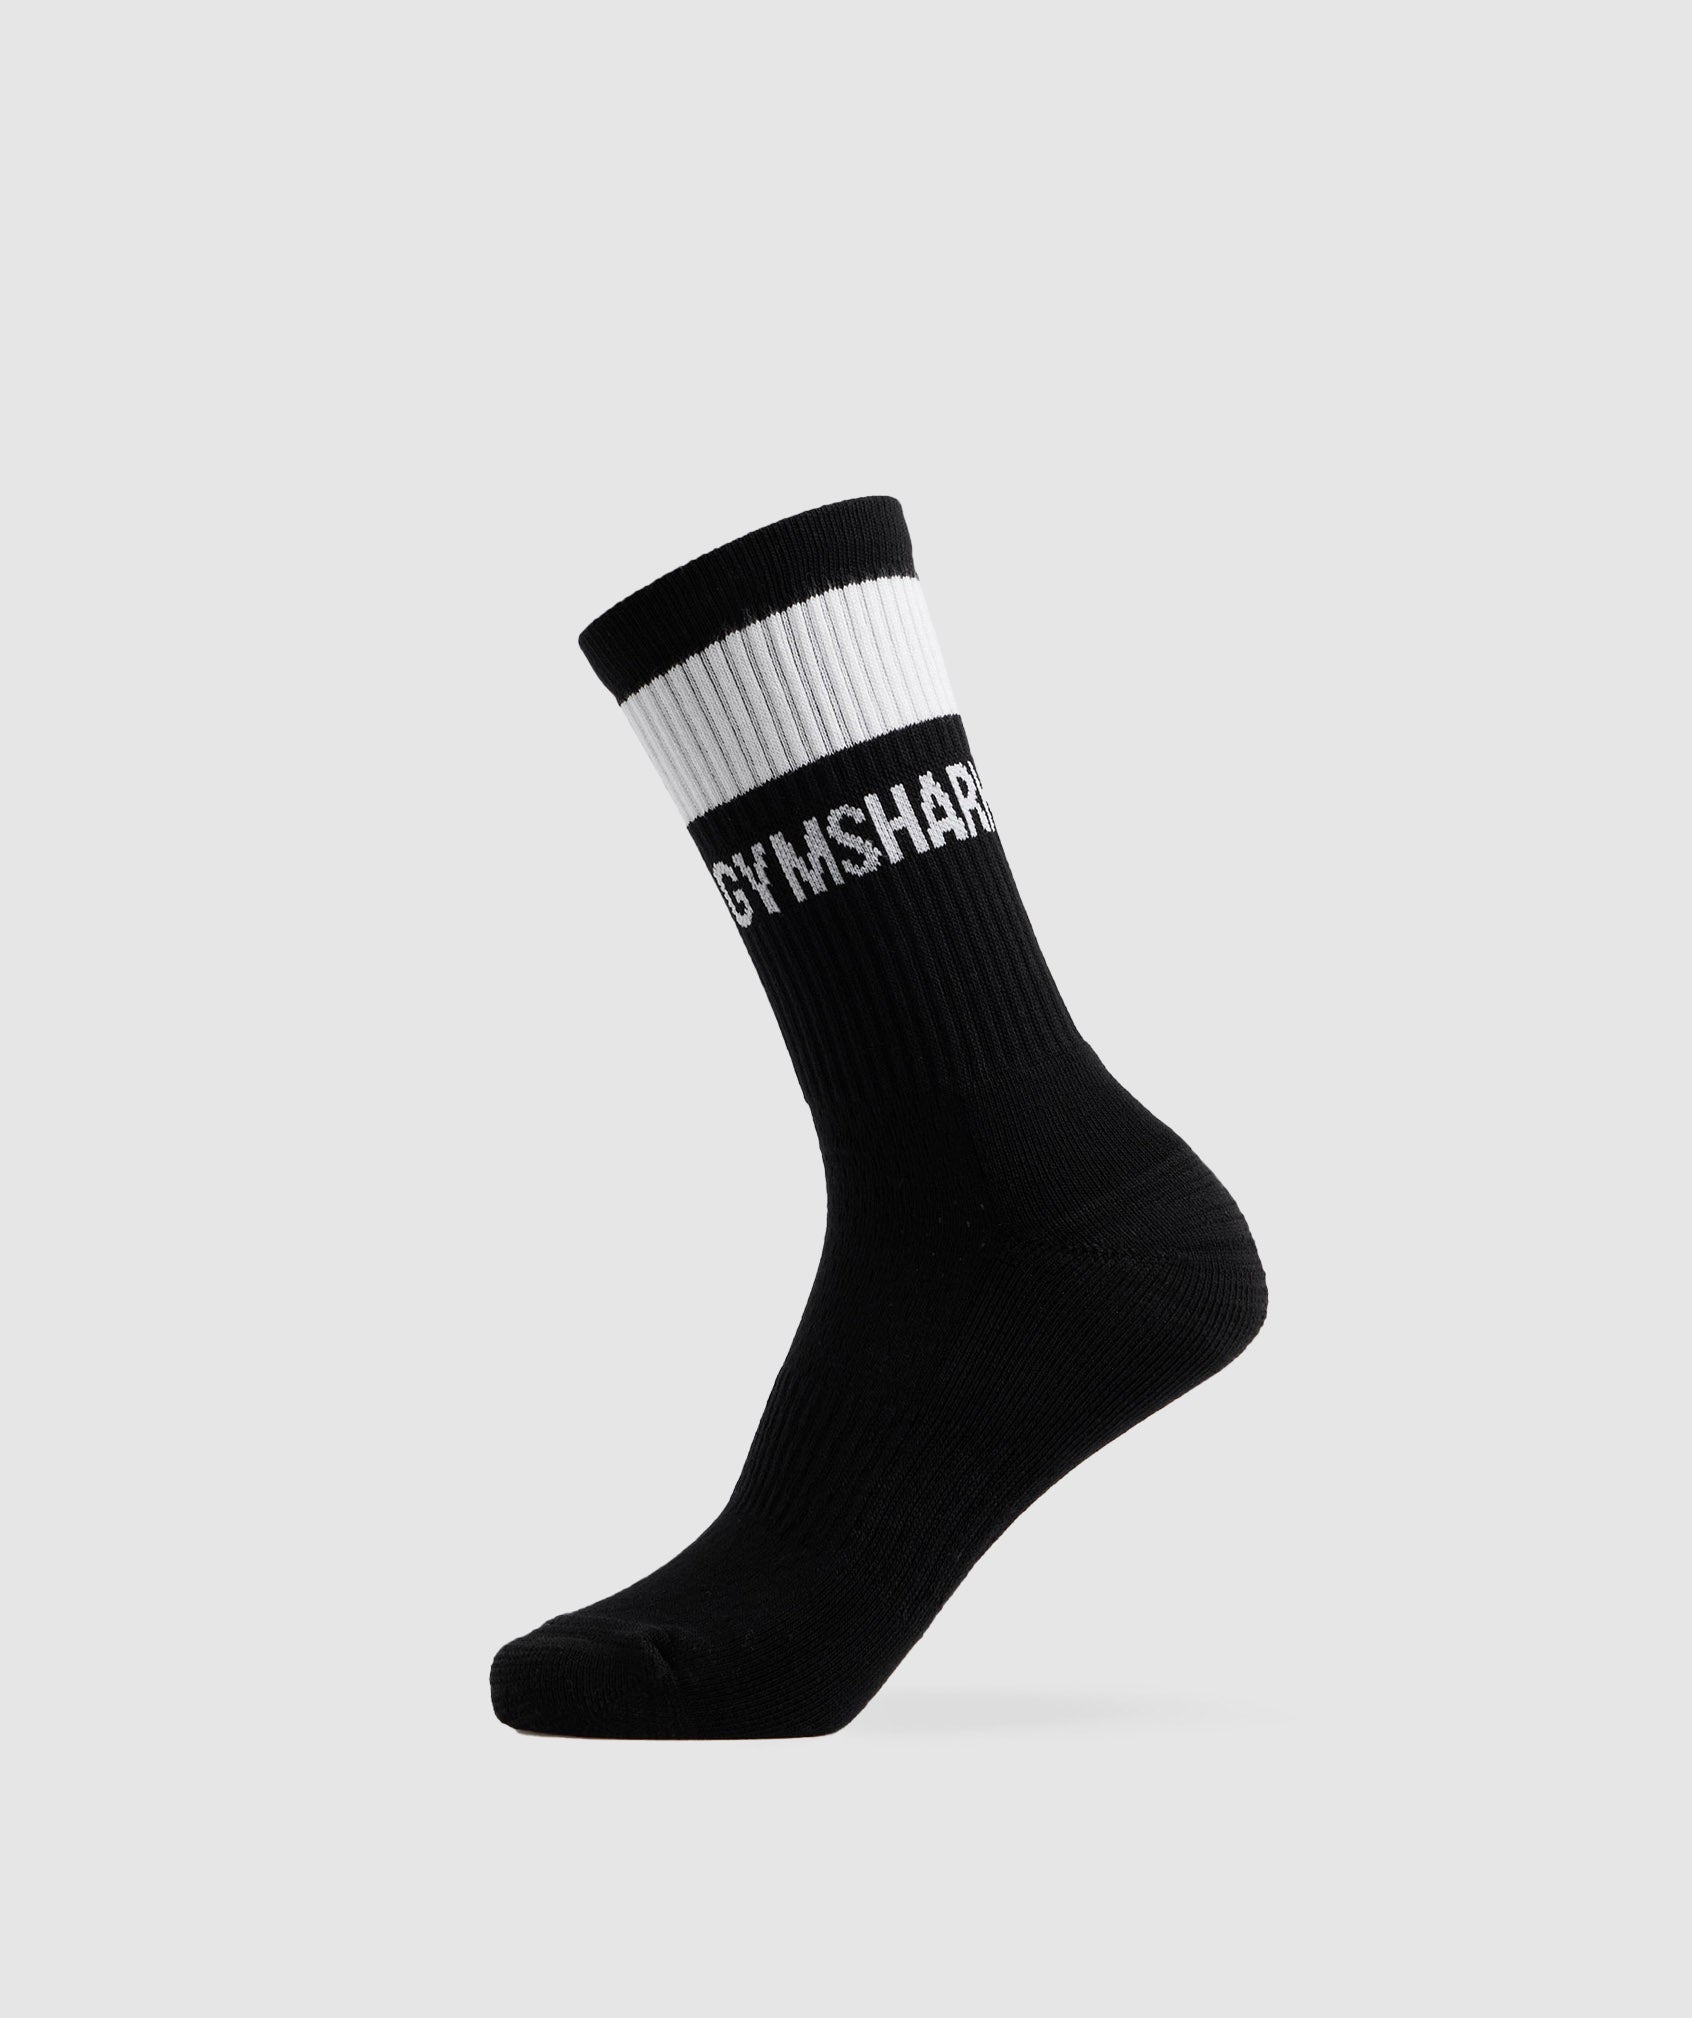 Premium Jacquard Single Socks in Black/White - view 1